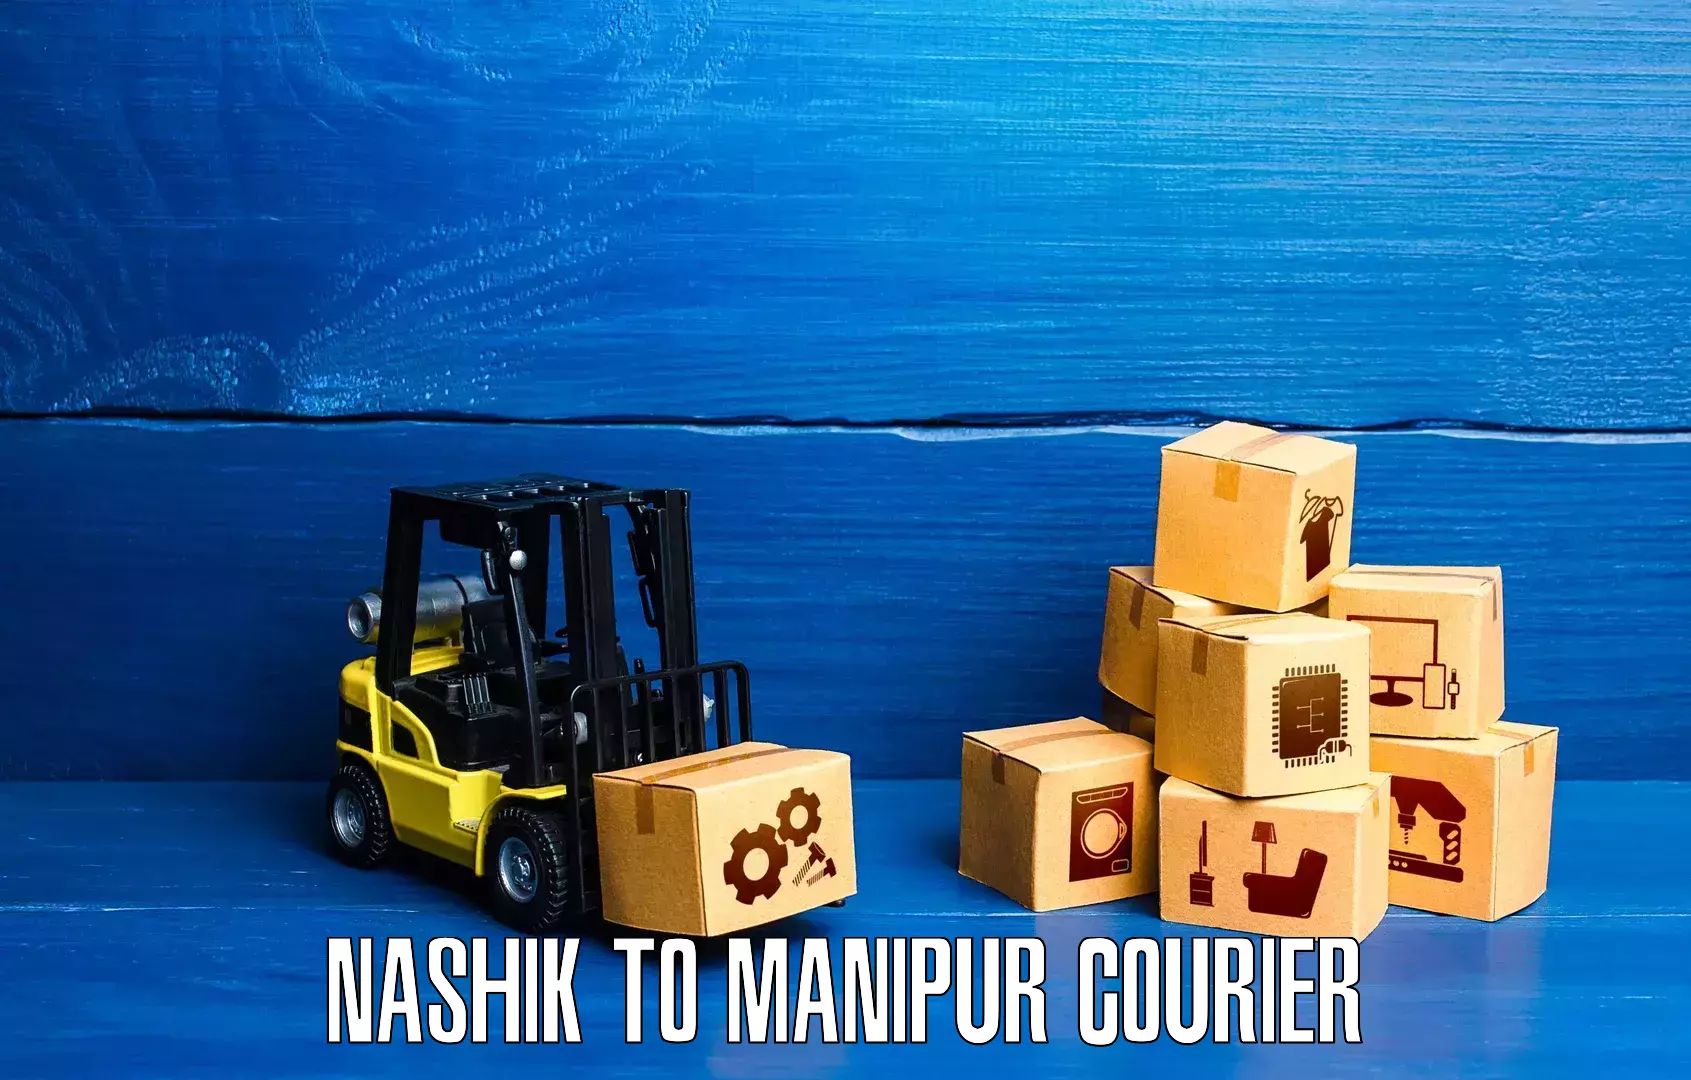 Express postal services Nashik to Manipur